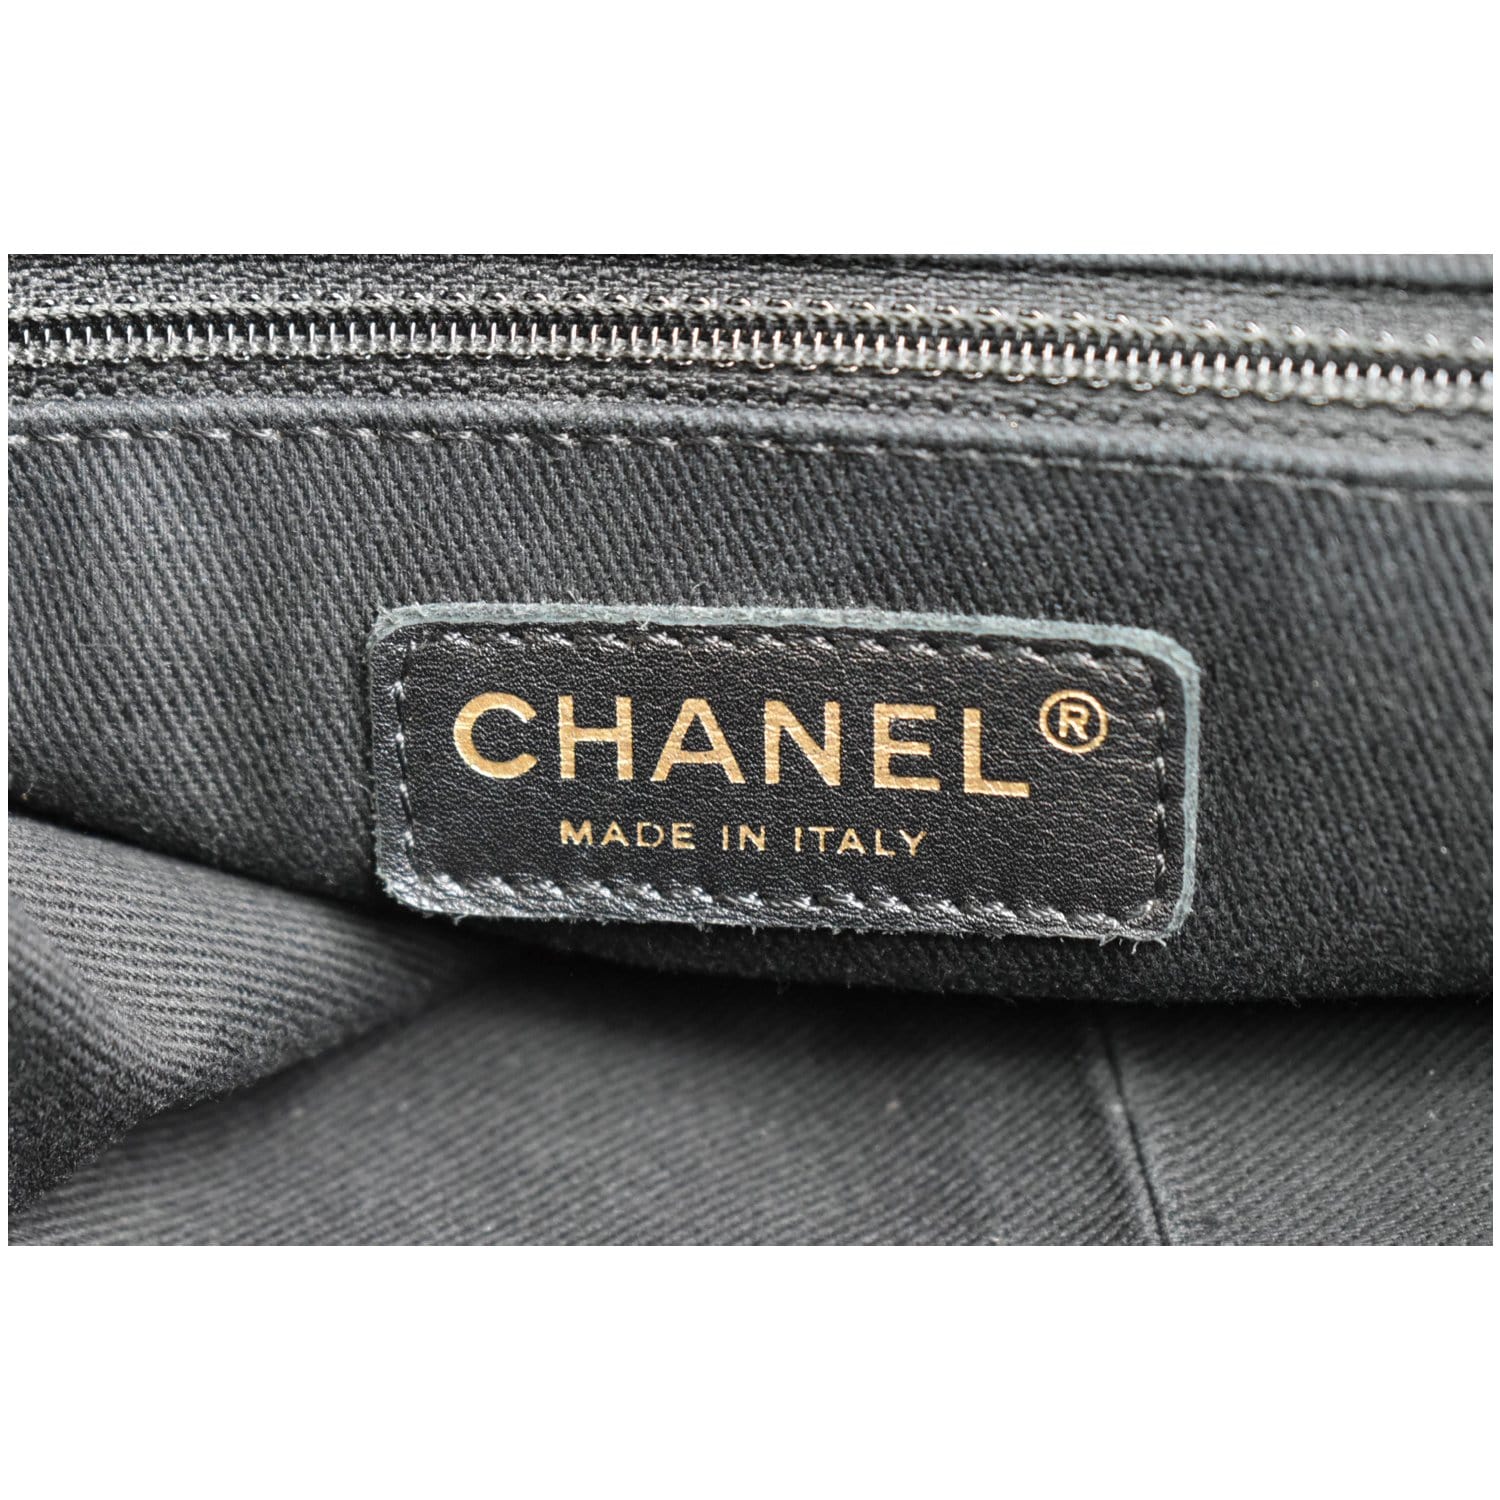 Chanel Maxi Hobo Bag - Shop on Pinterest